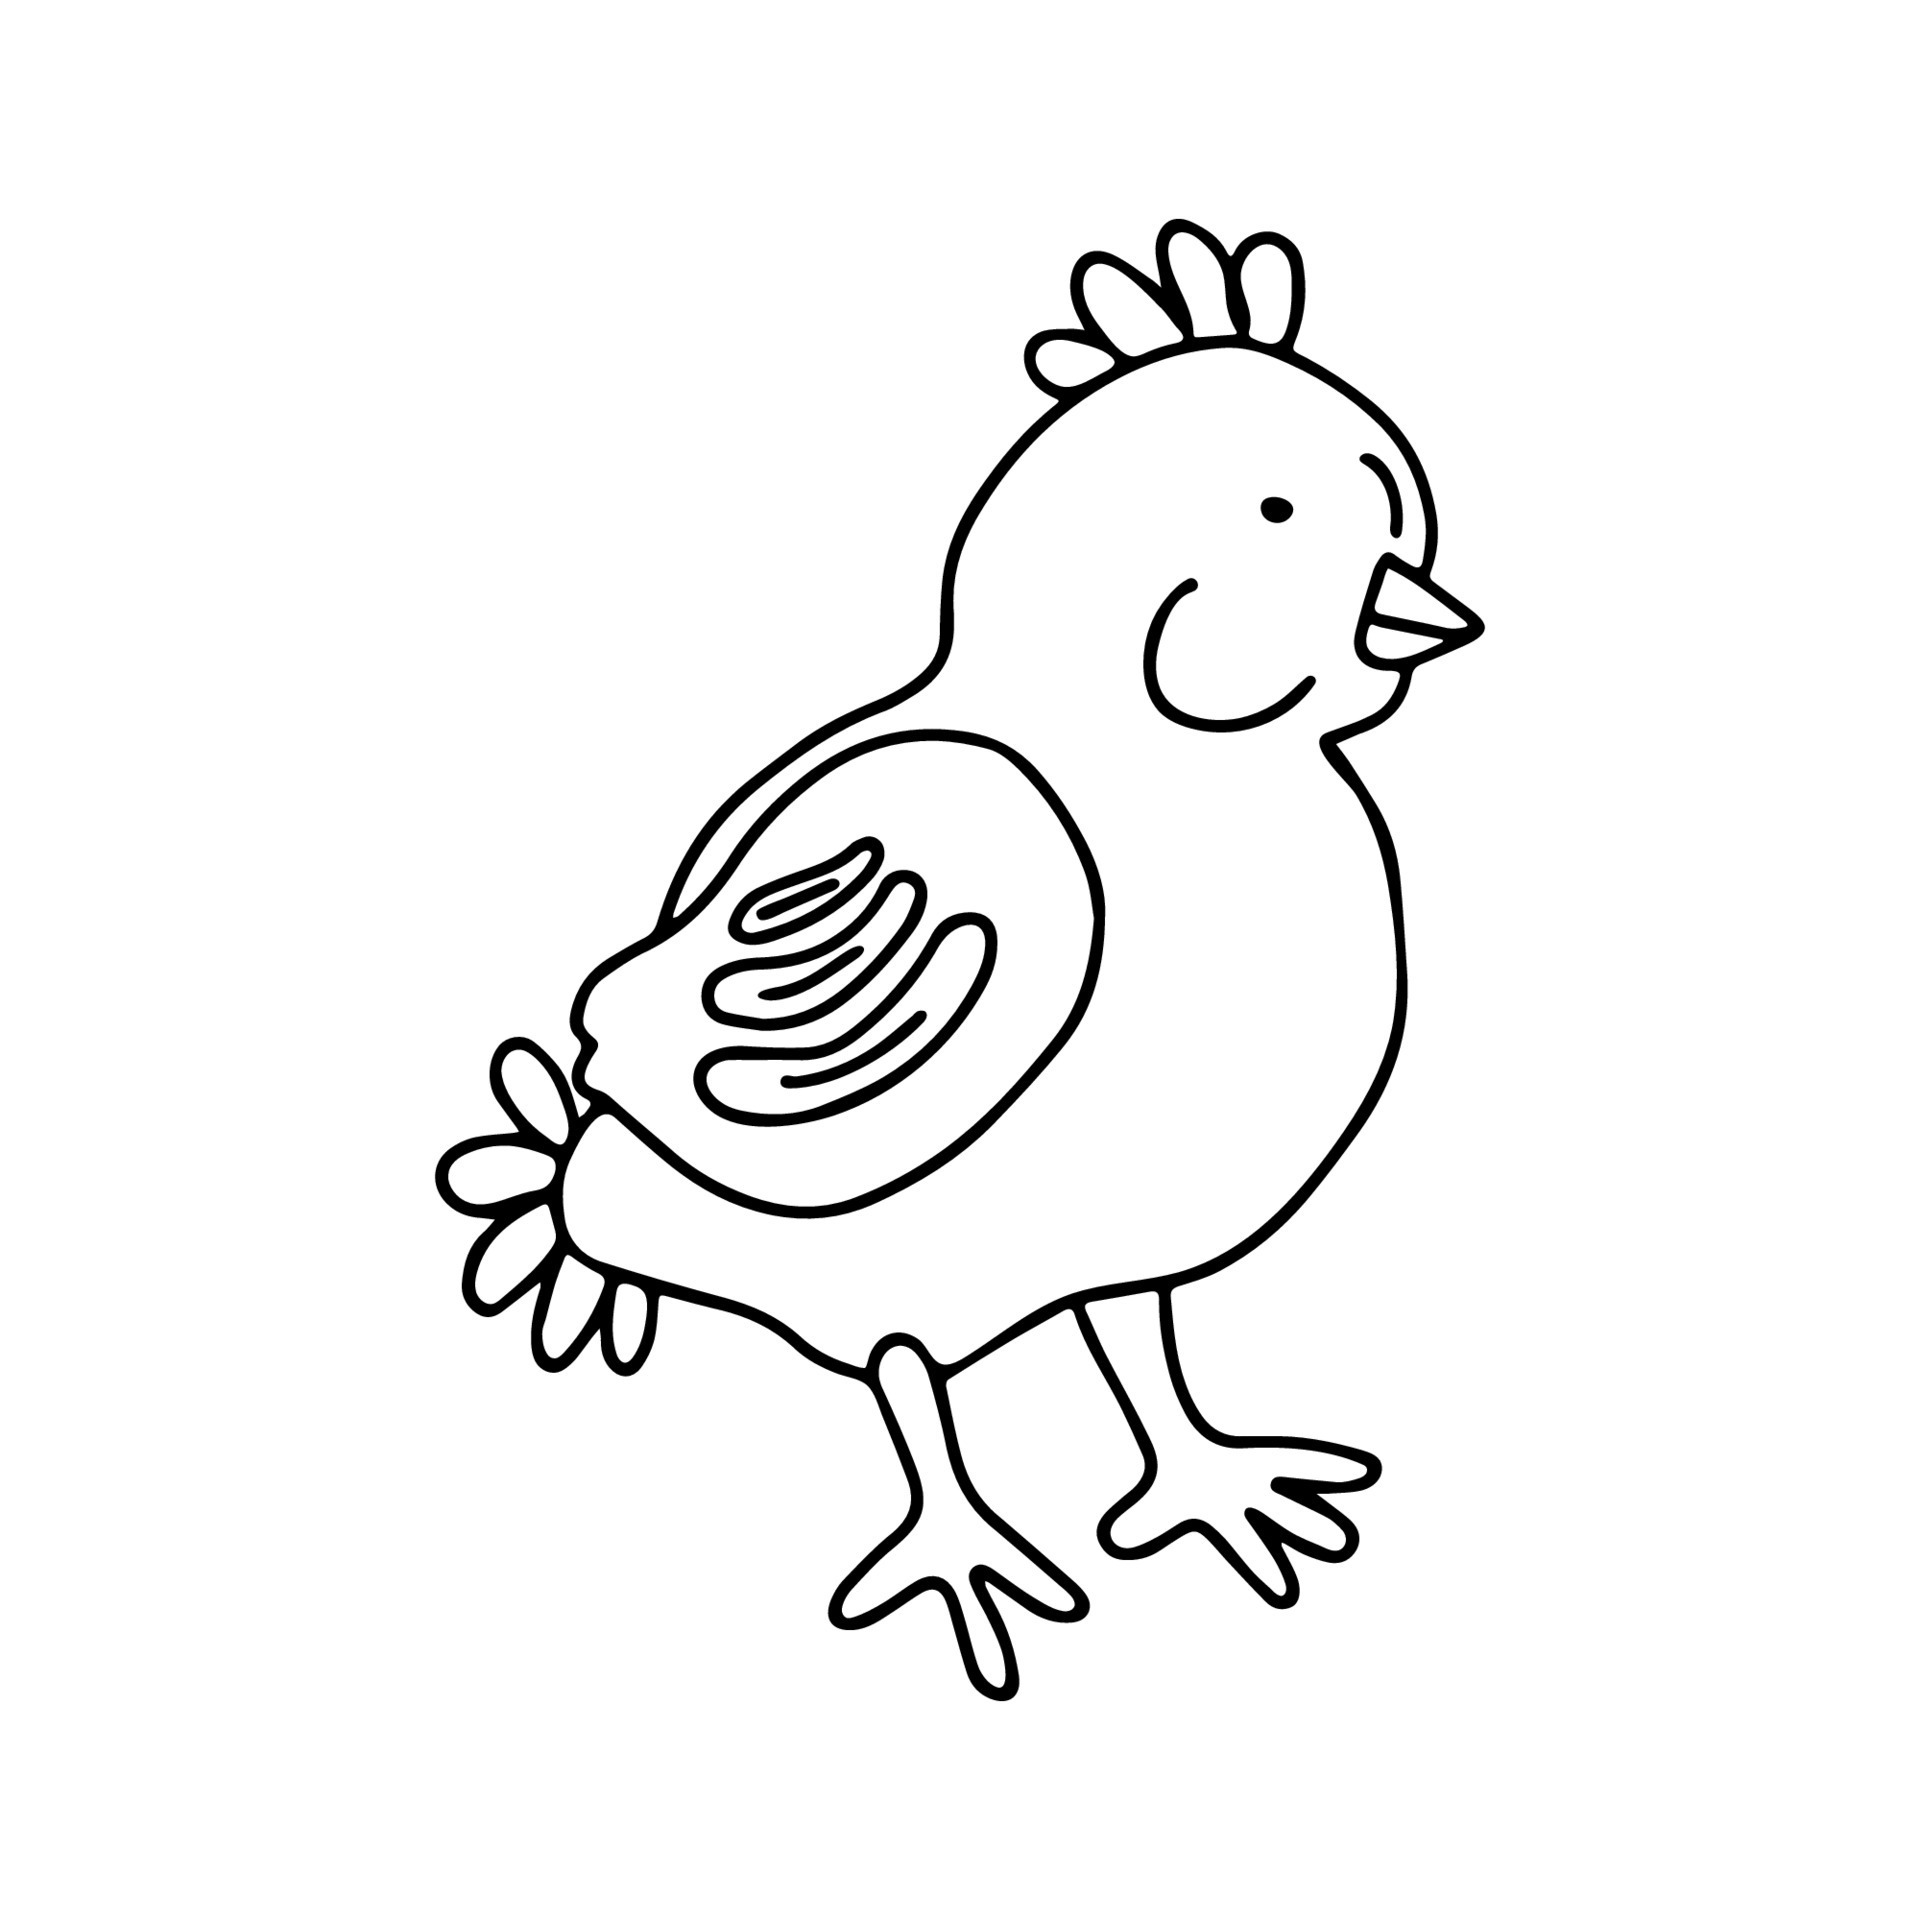 como desenhar galinha bonitinha. 6879282 Vetor no Vecteezy